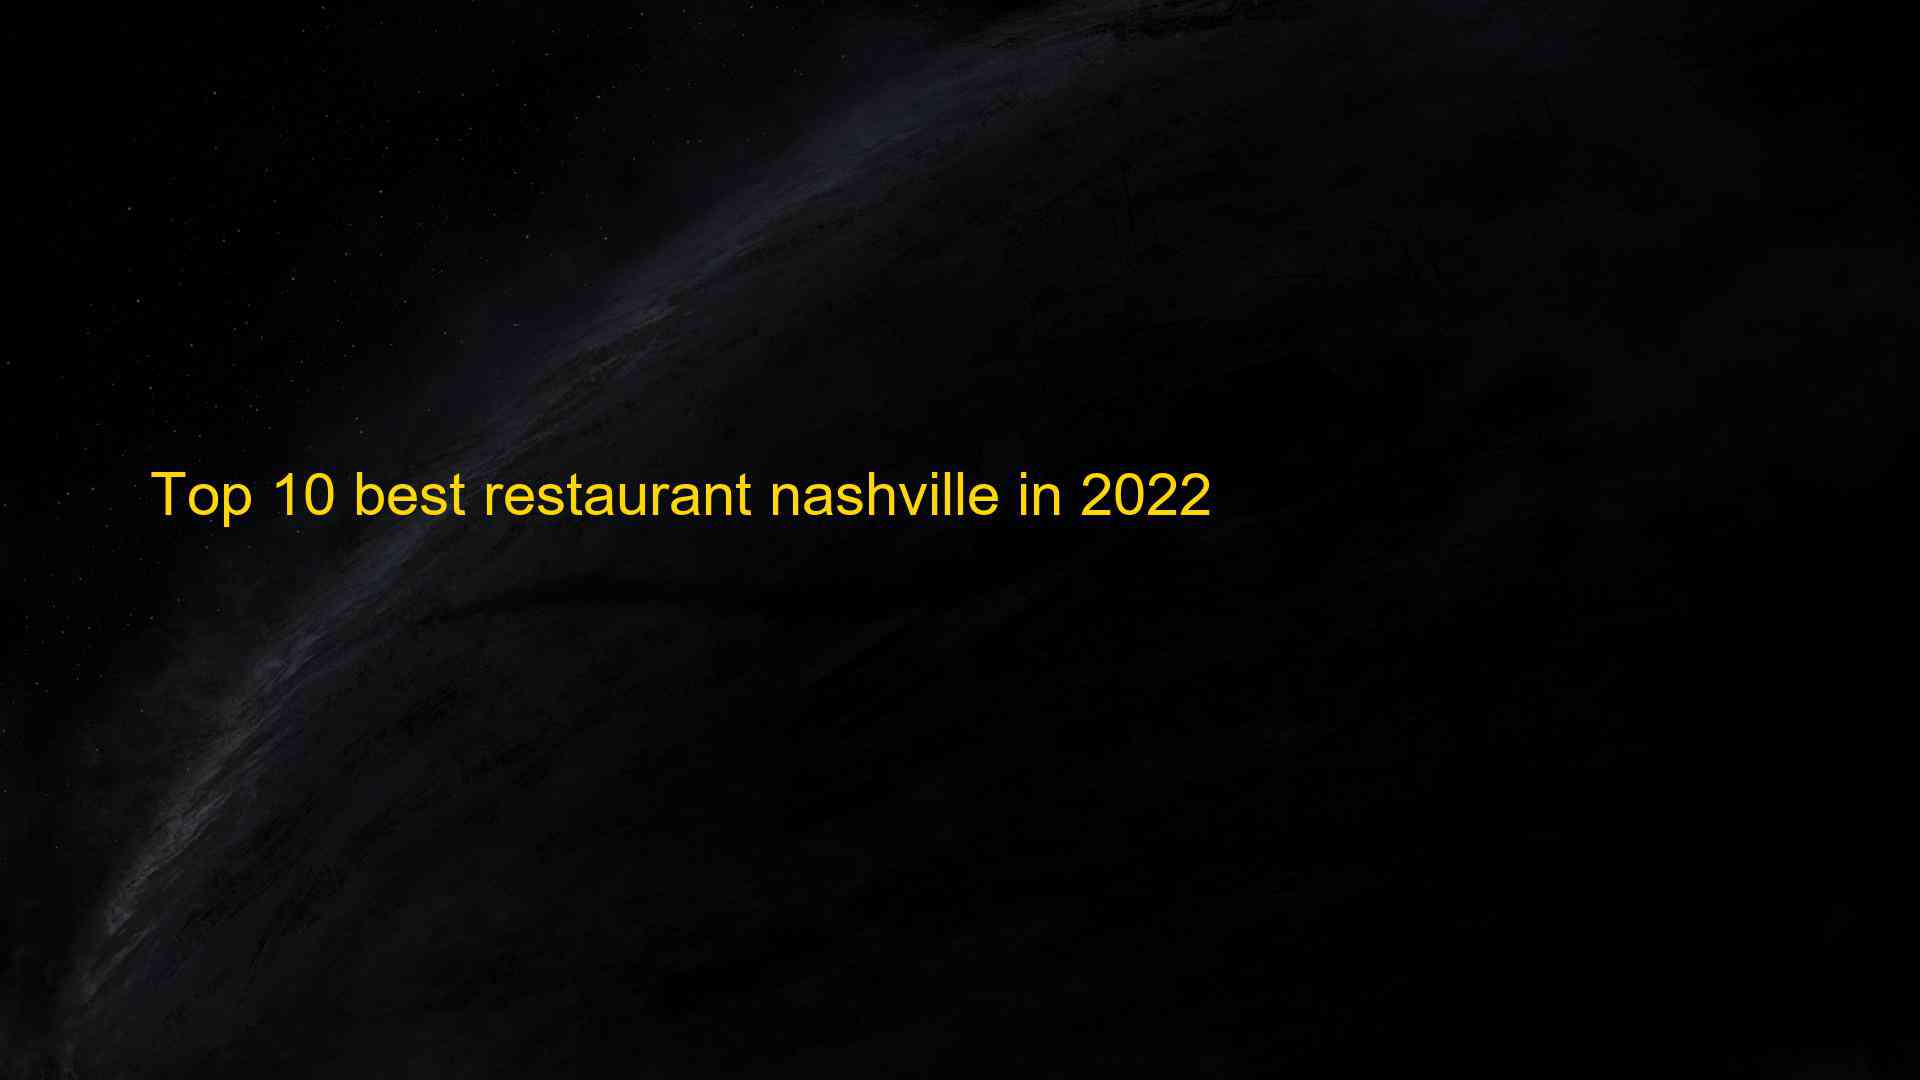 Top 10 best restaurant nashville in 2022 1663180907